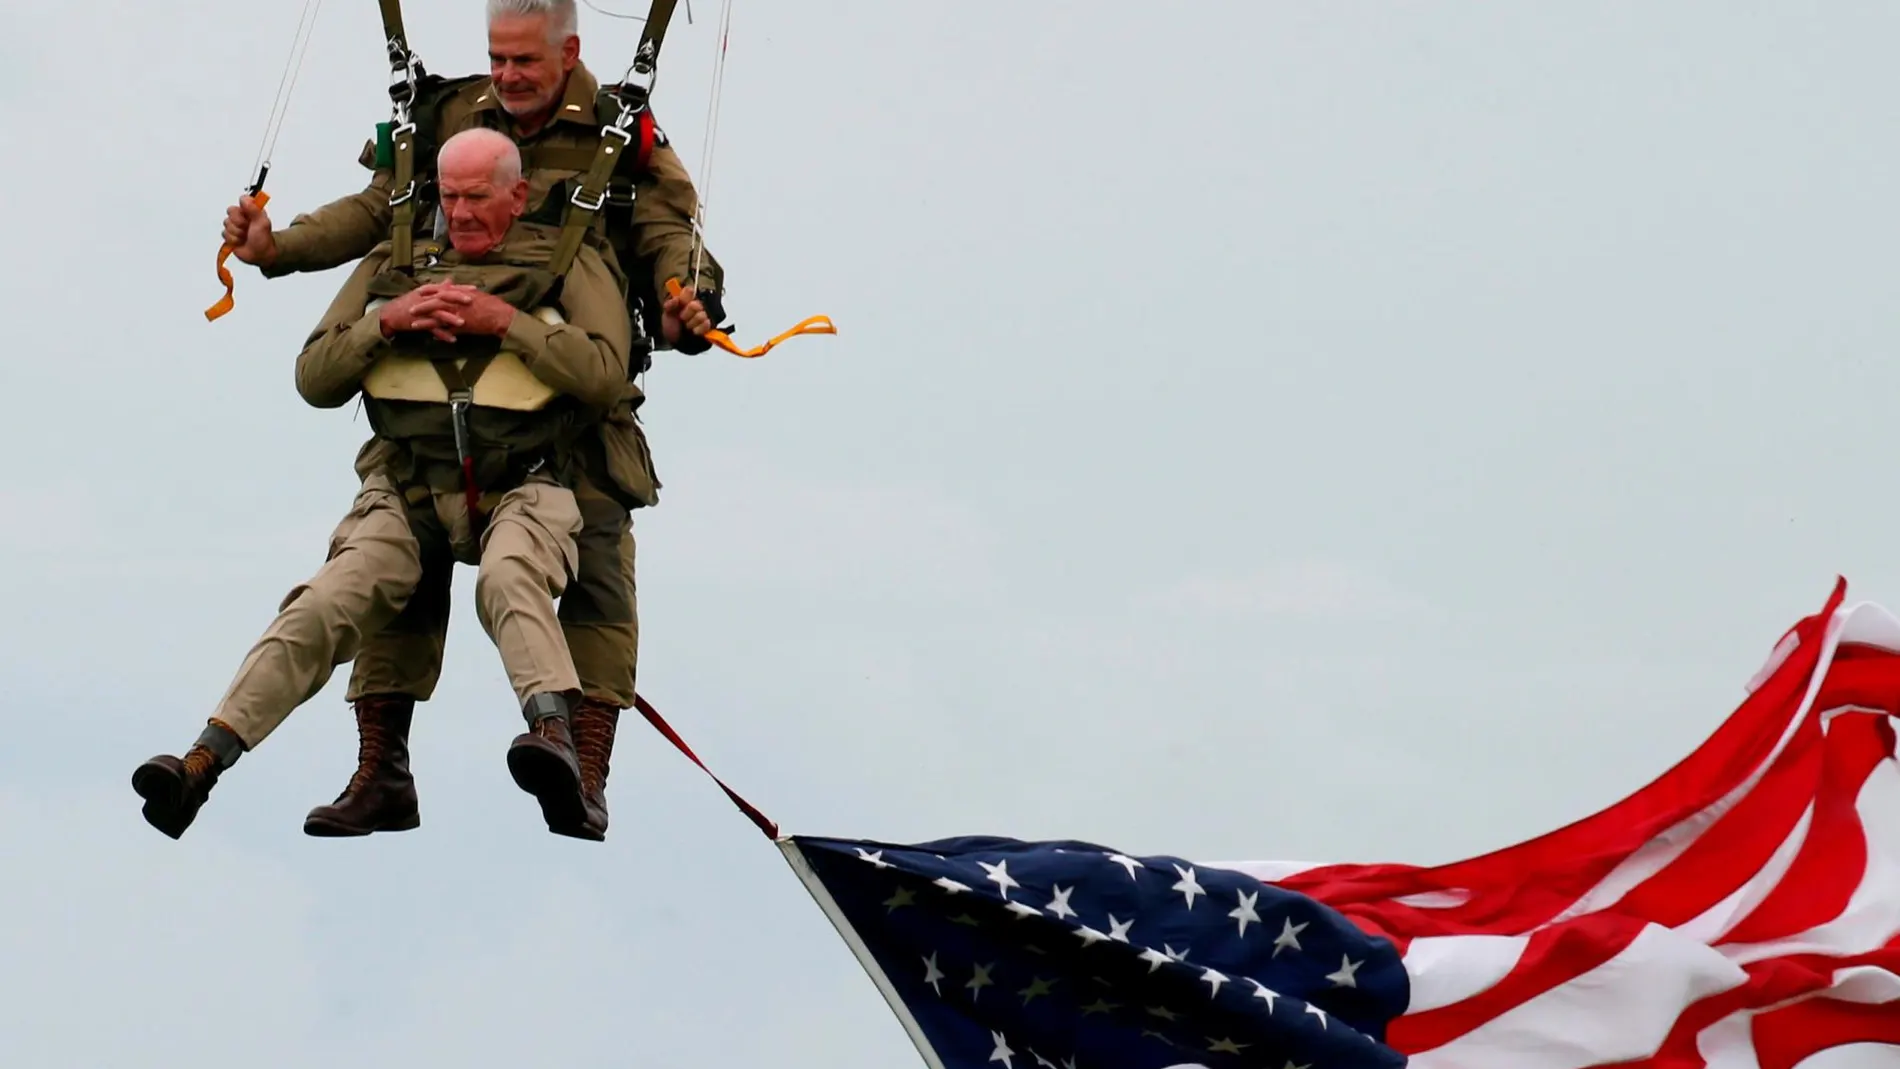 Tom Rice aterriza tras un salto en paracaídas conmemorativo sobre Carentan (Normandía) / Reuters